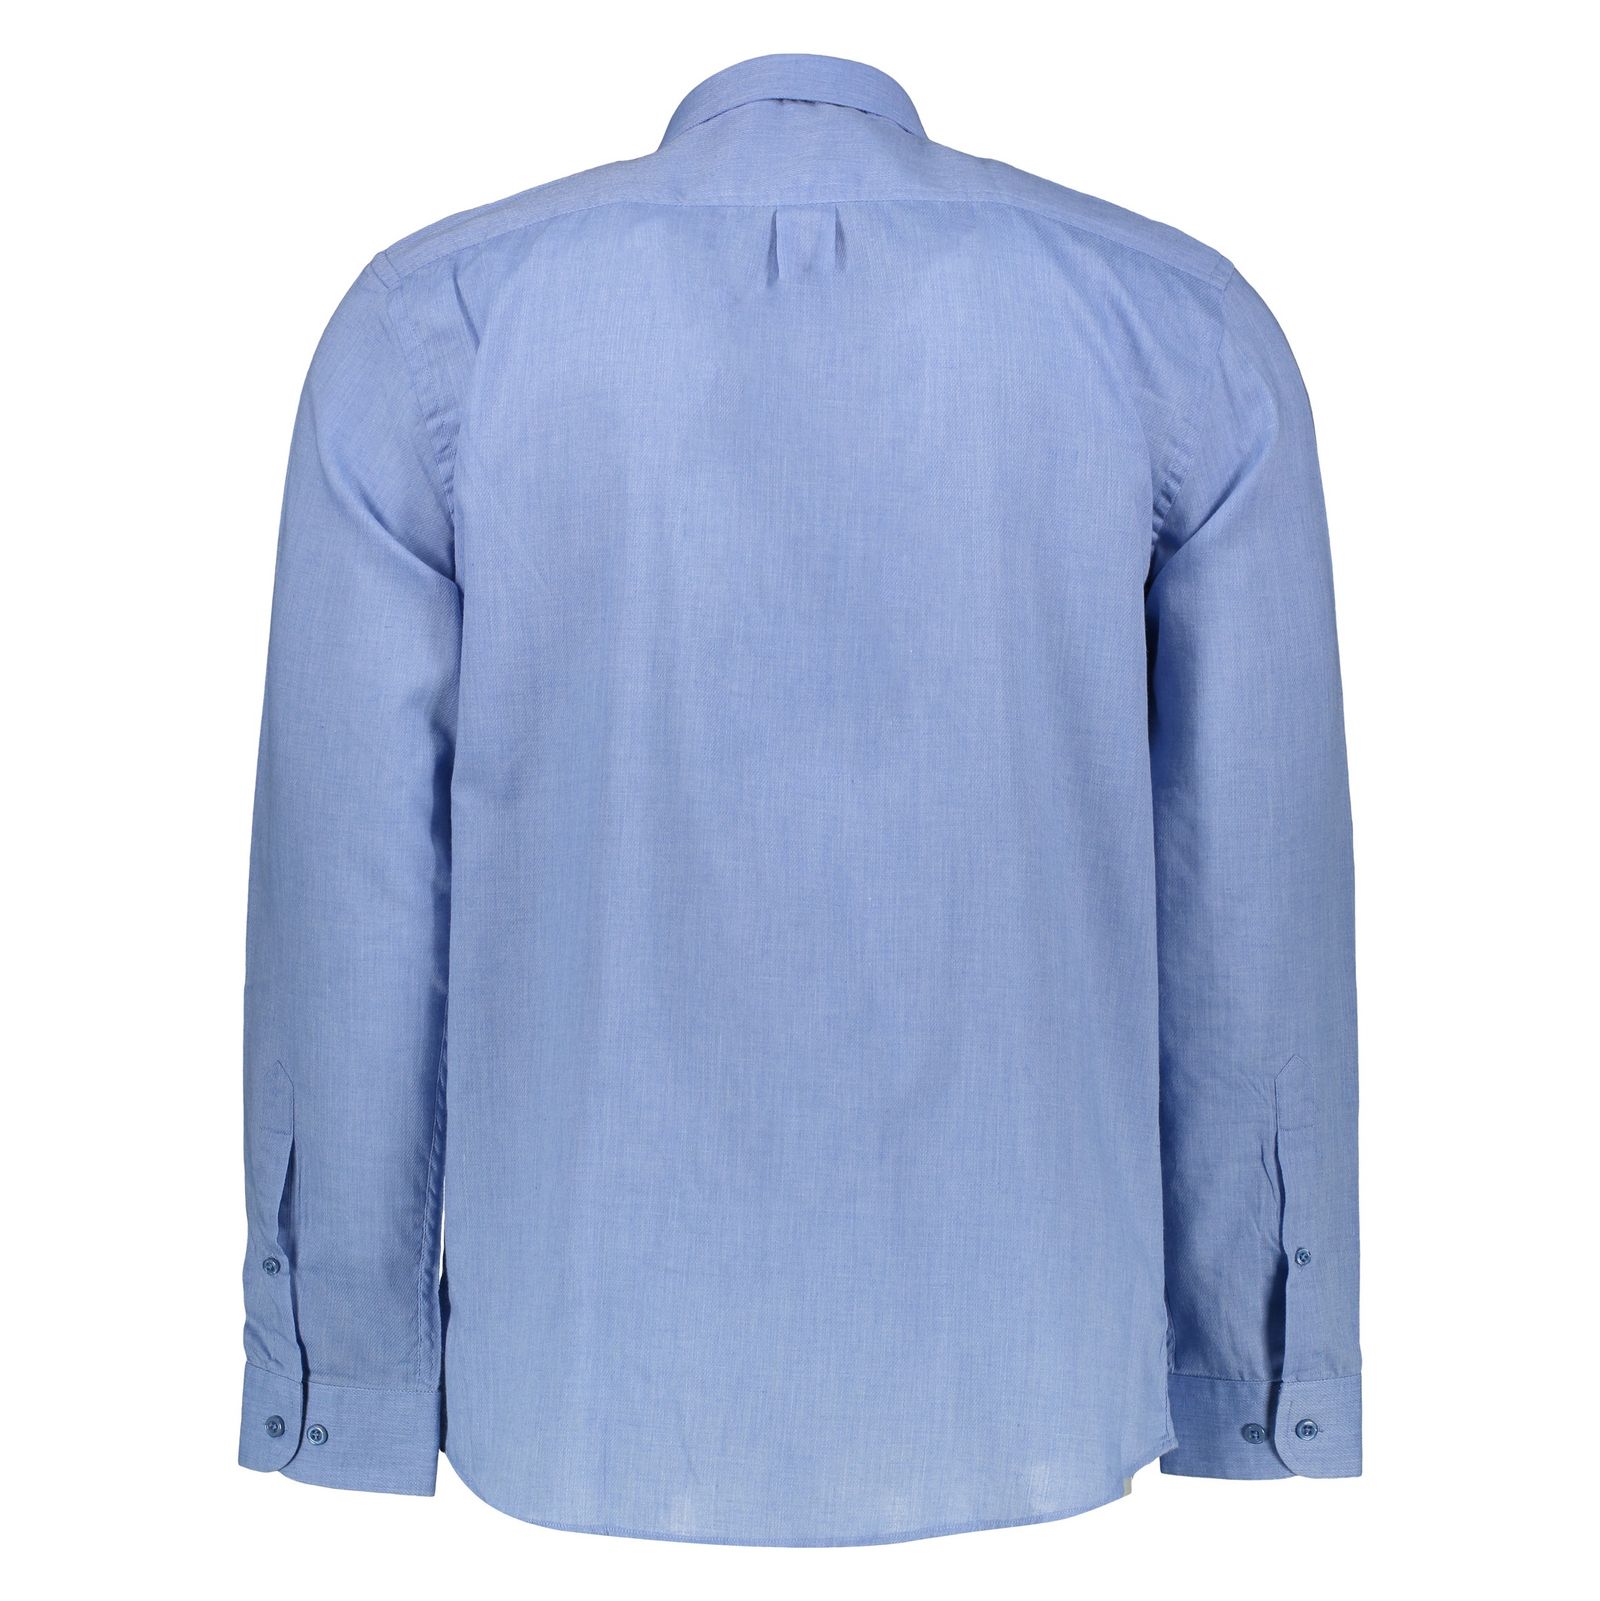 پیراهن مردانه لرد آرچر مدل 200114657 - آبی - 3